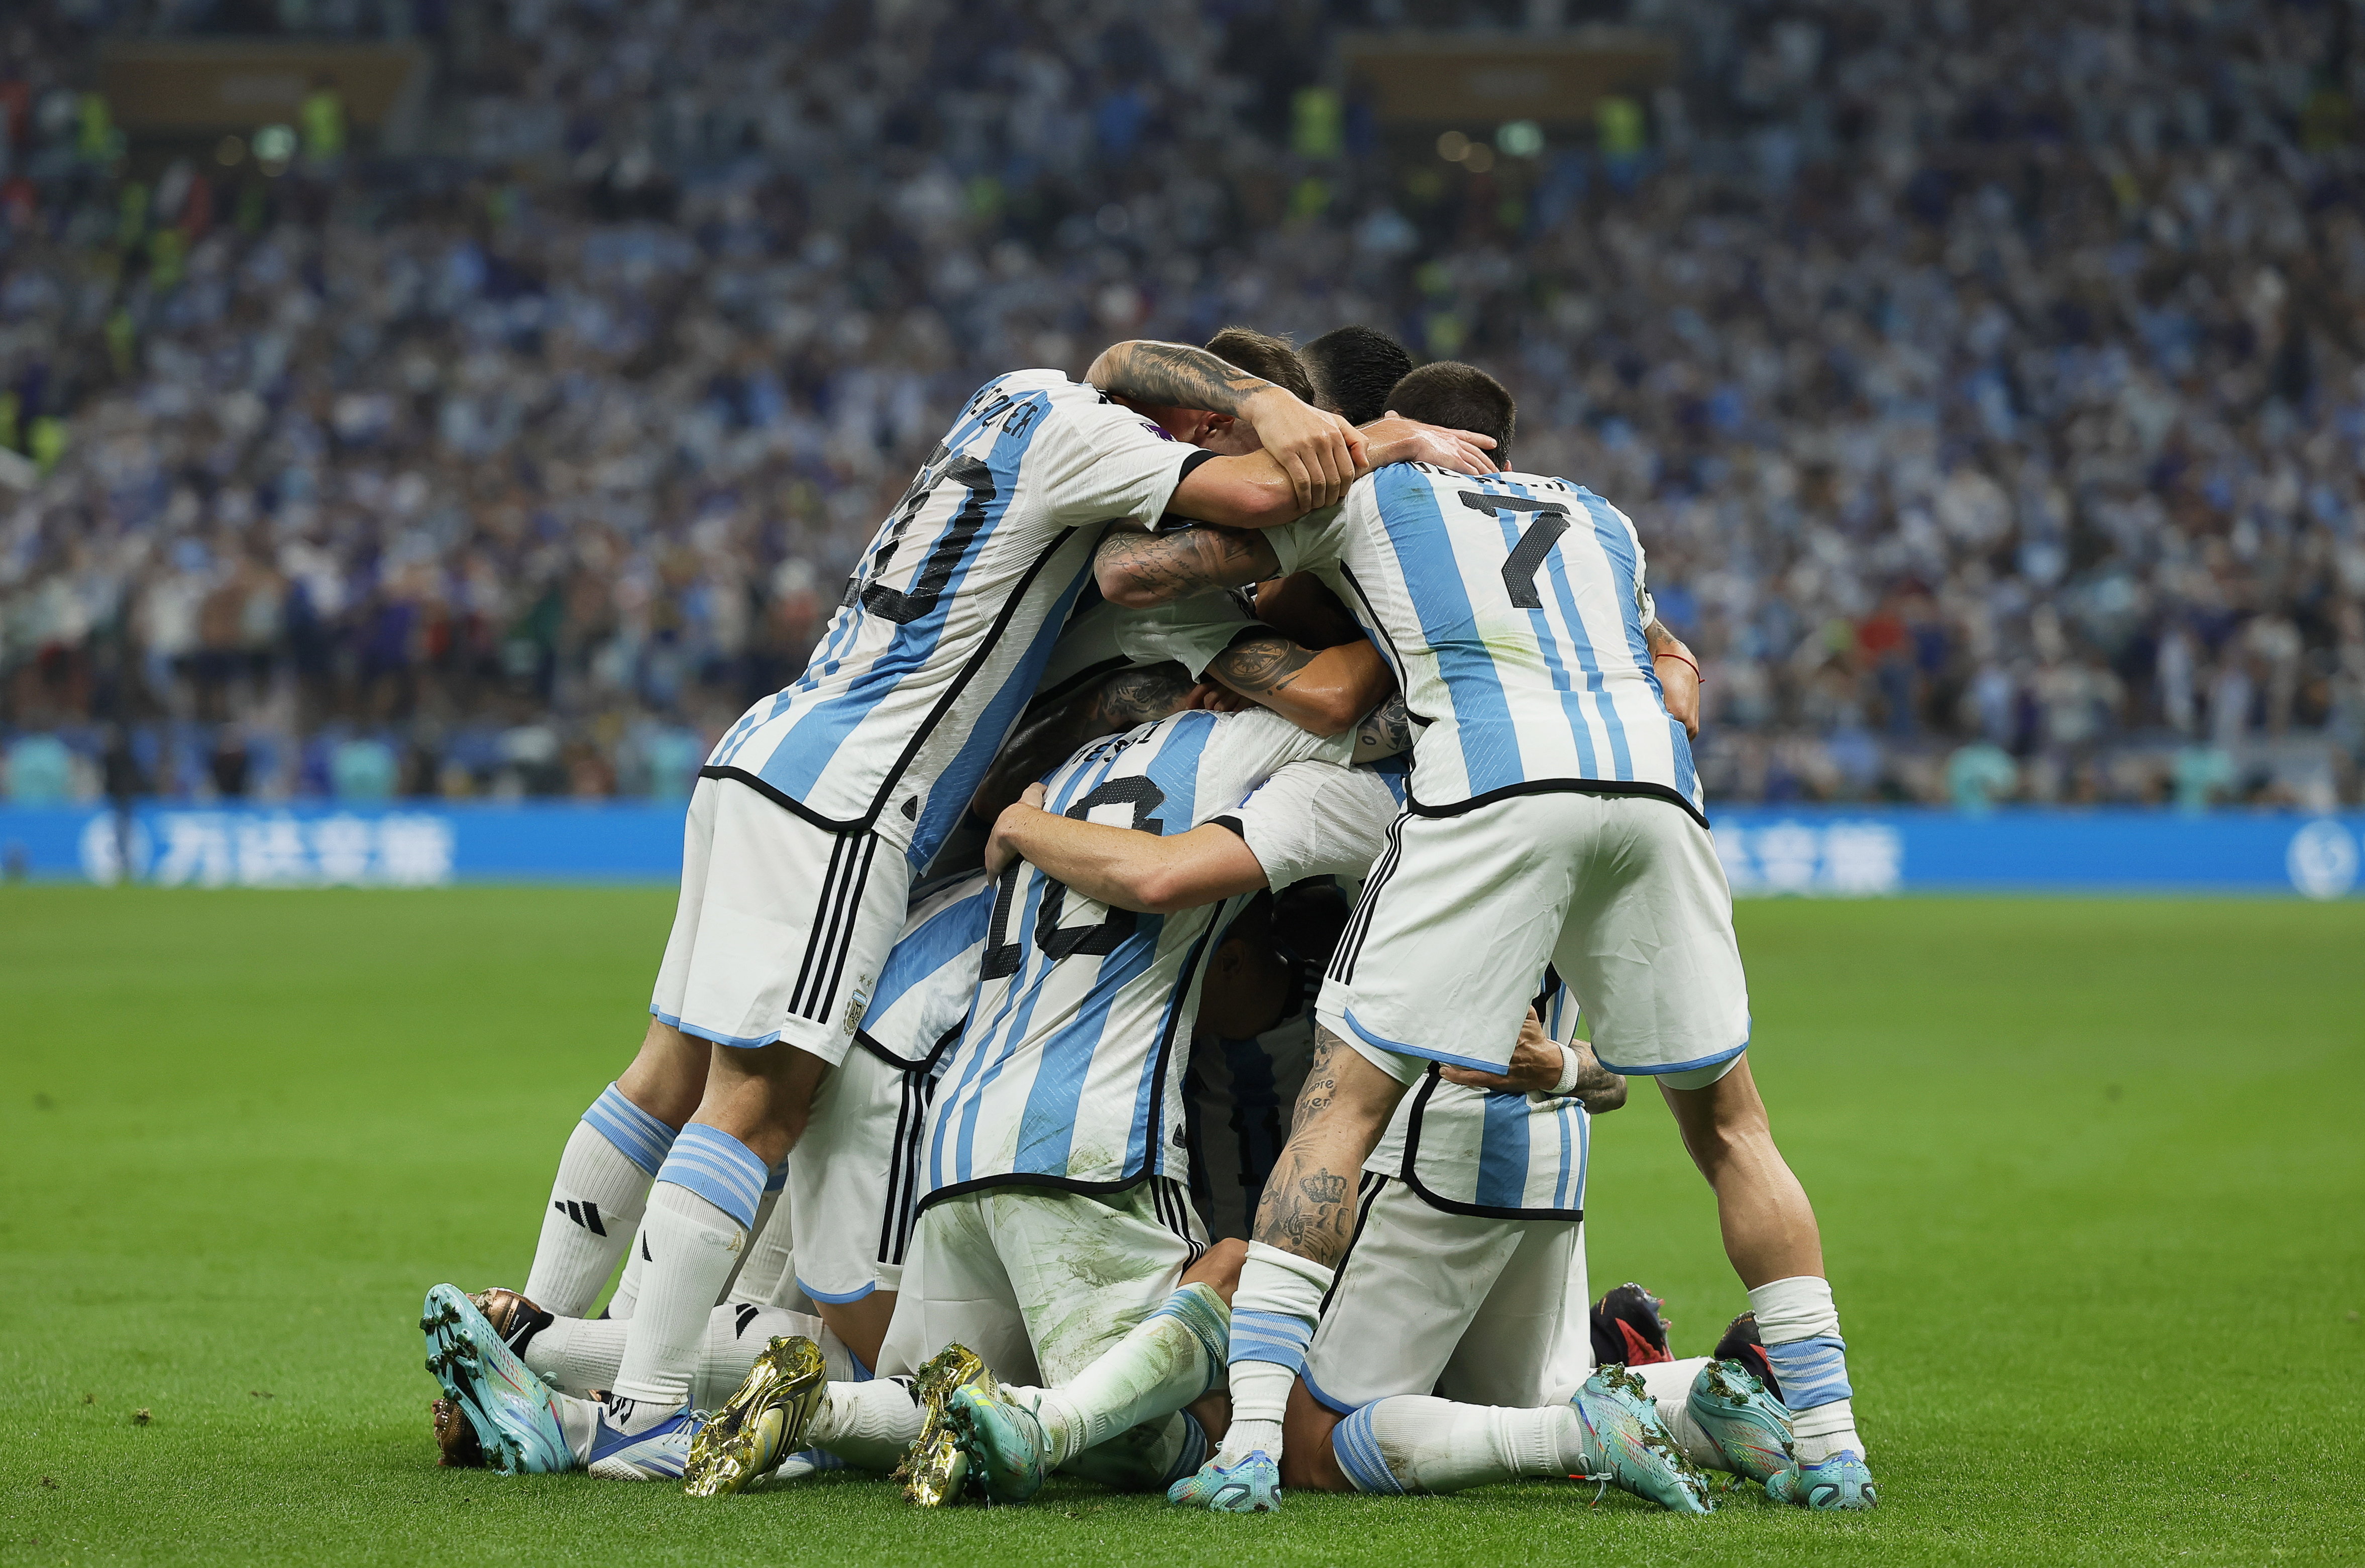 Foci-vb: Tizenegyespárbaj után Argentína a világbajnok